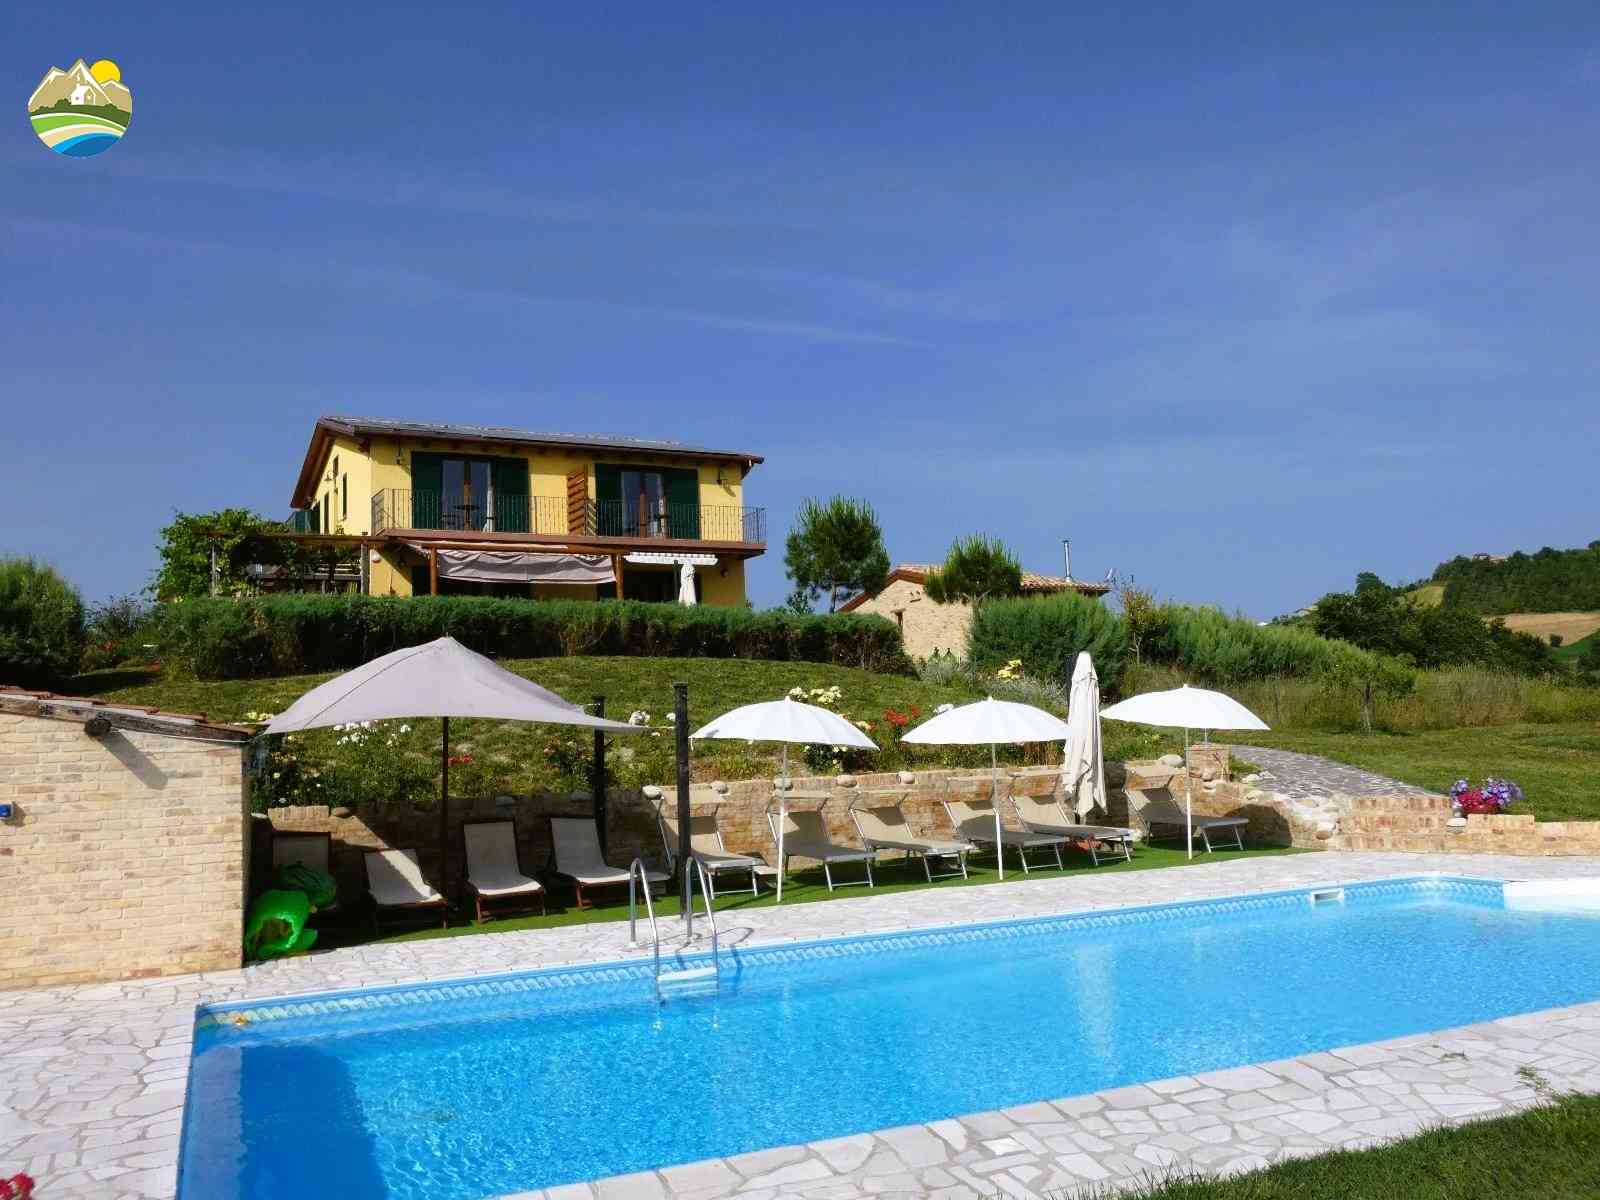 Villa Villa in vendita Bellante (TE), Villa Il Frutteto - Bellante - EUR 509.983 850